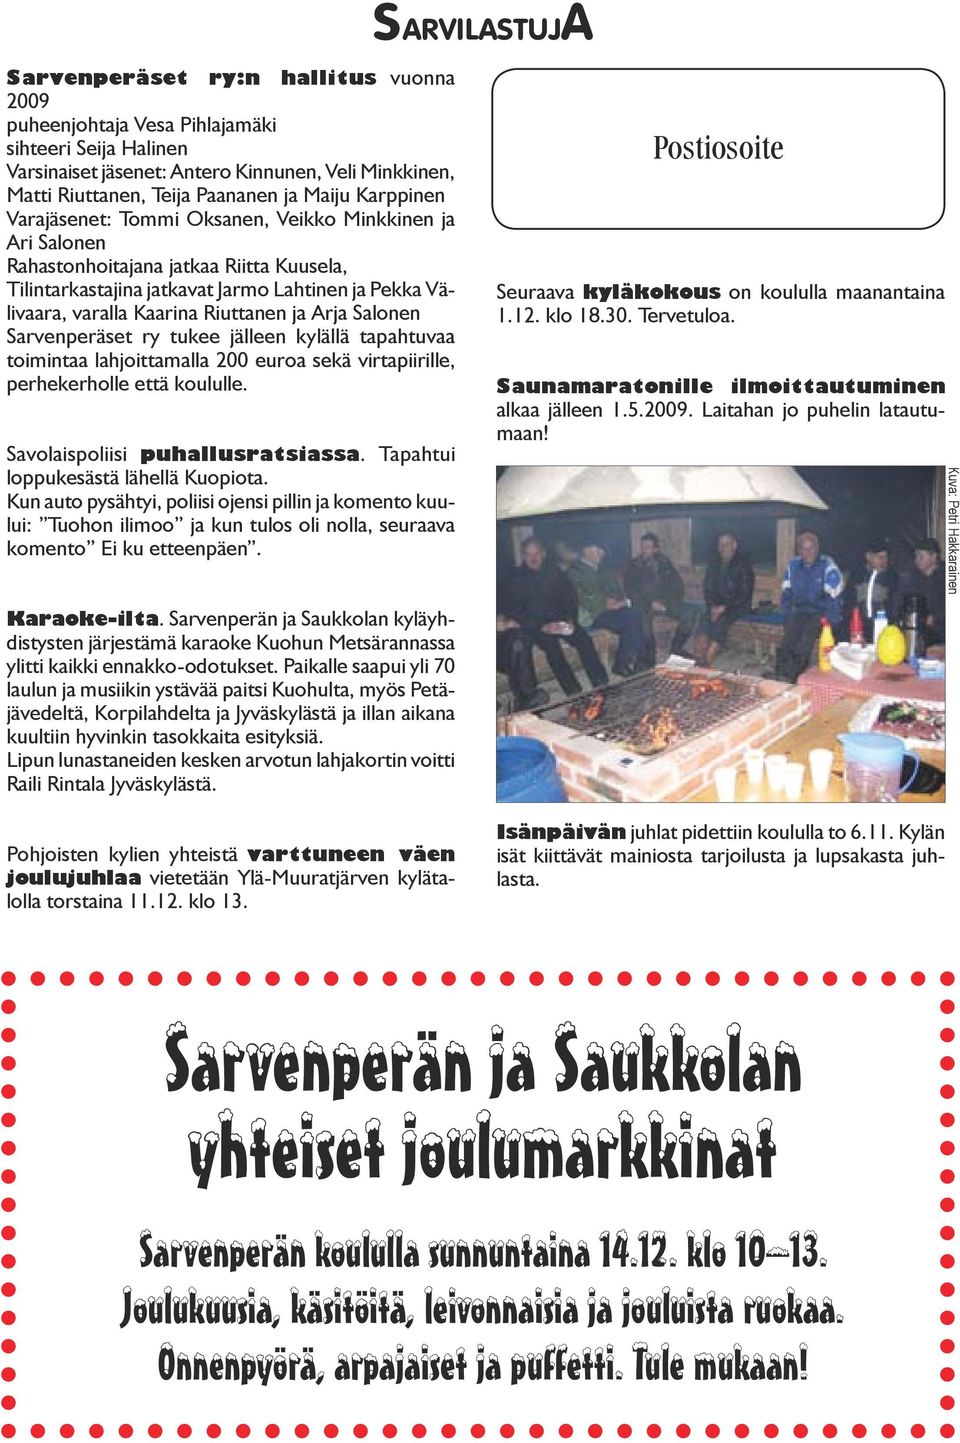 Riuttanen ja Arja Salonen Sarvenperäset ry tukee jälleen kylällä tapahtuvaa toimintaa lahjoittamalla 200 euroa sekä virtapiirille, perhekerholle että koululle. Savolaispoliisi puhallusratsiassa.